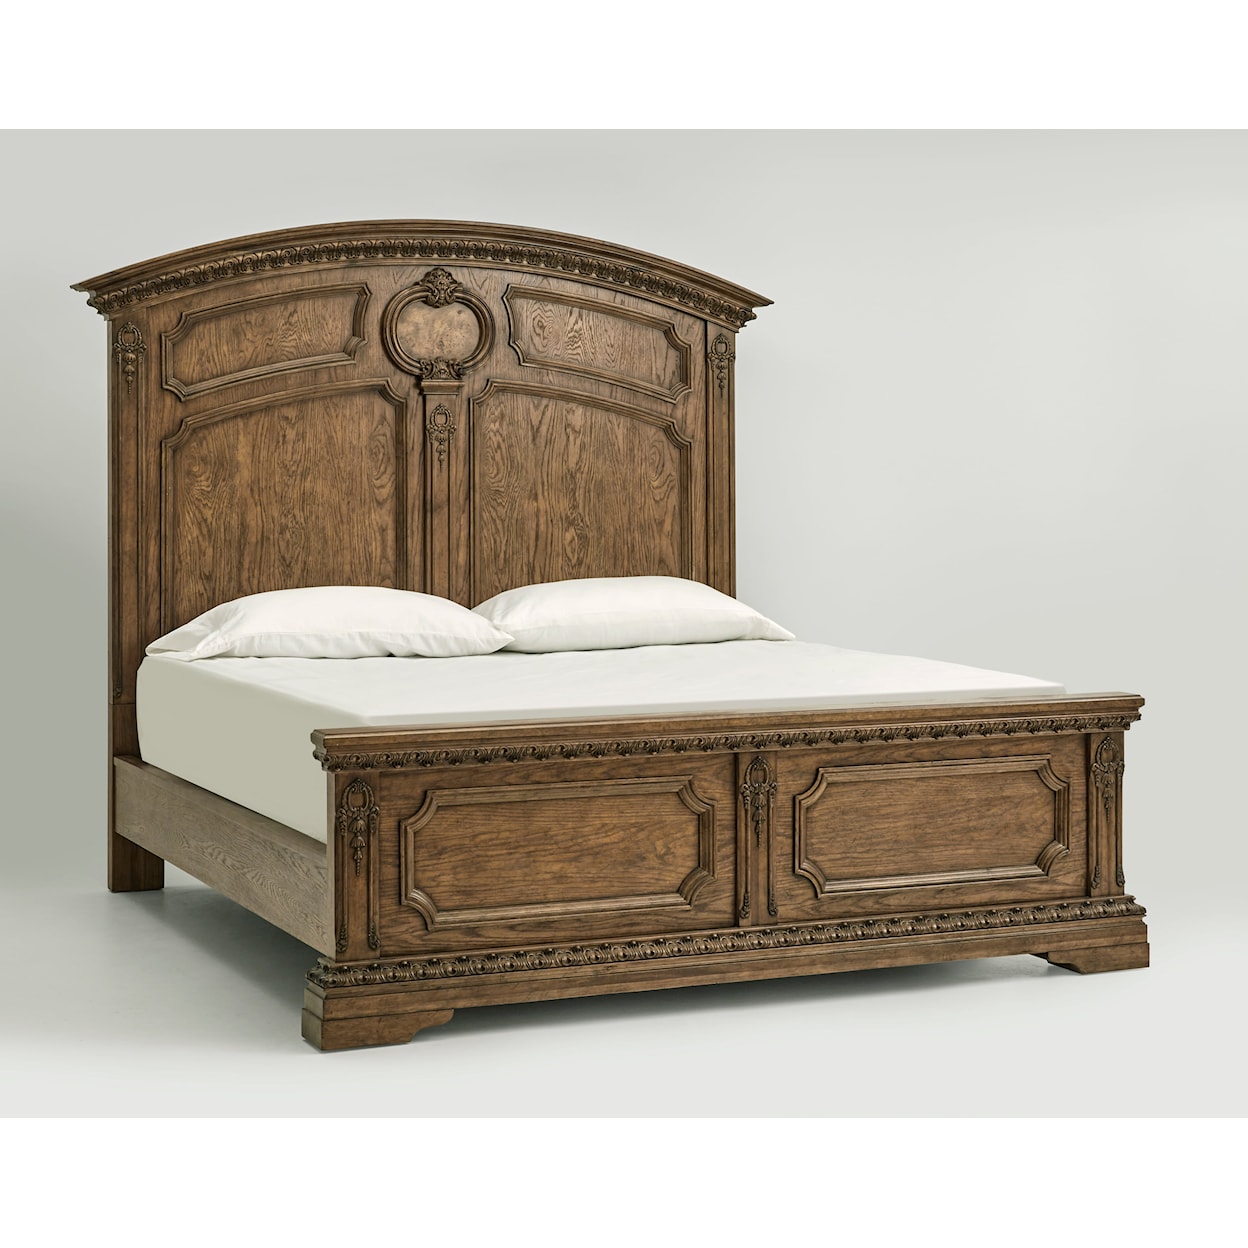 The Preserve Seneca King Mansion Bed